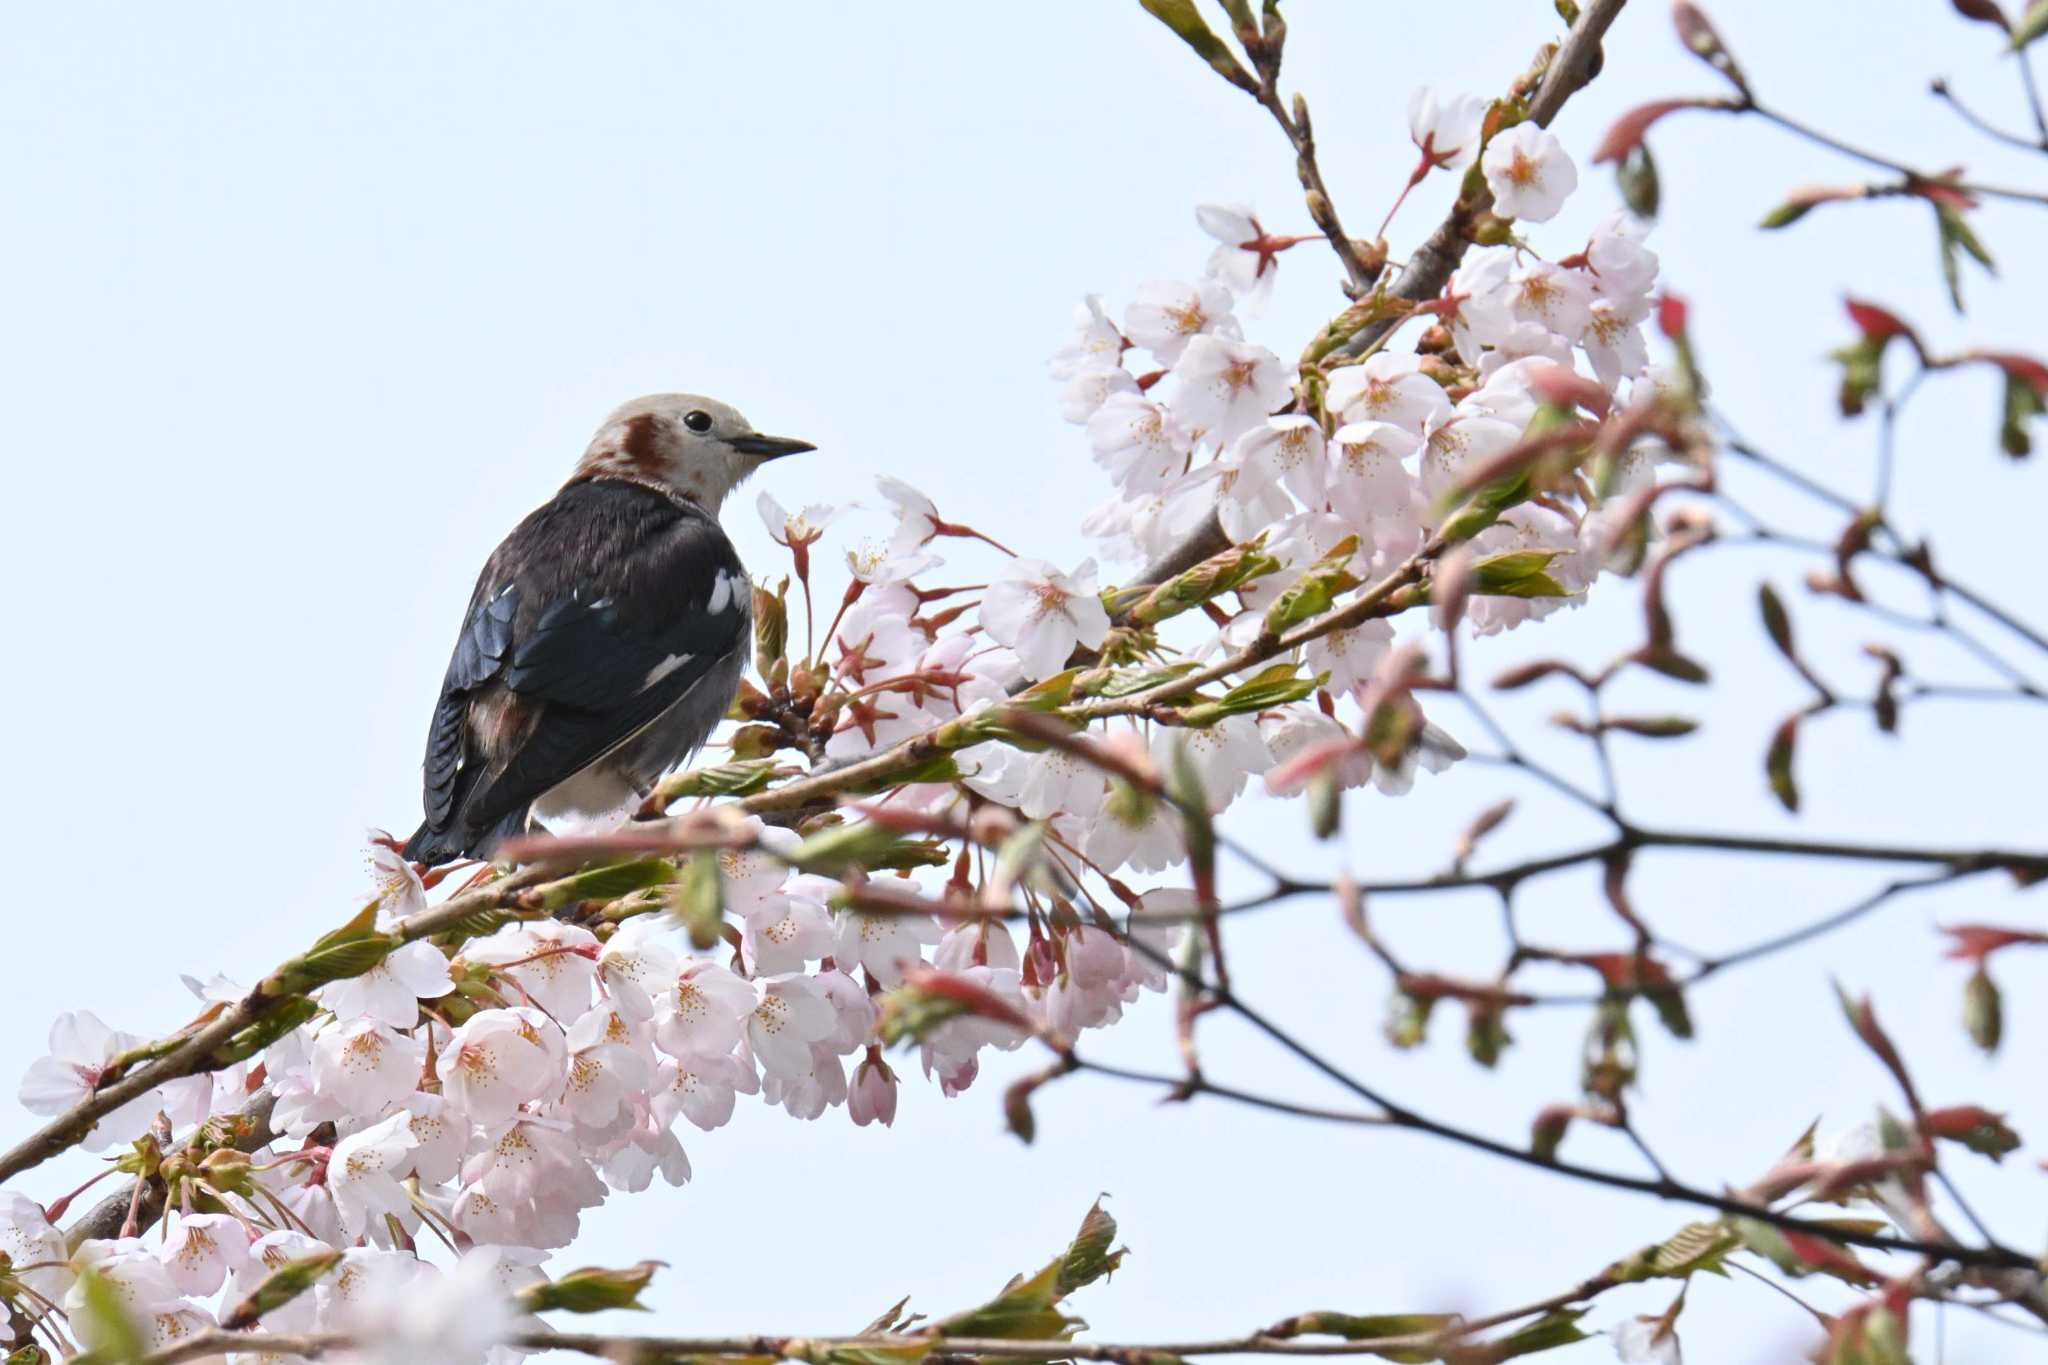 Photo of Chestnut-cheeked Starling at Goryokaku Park by Masa